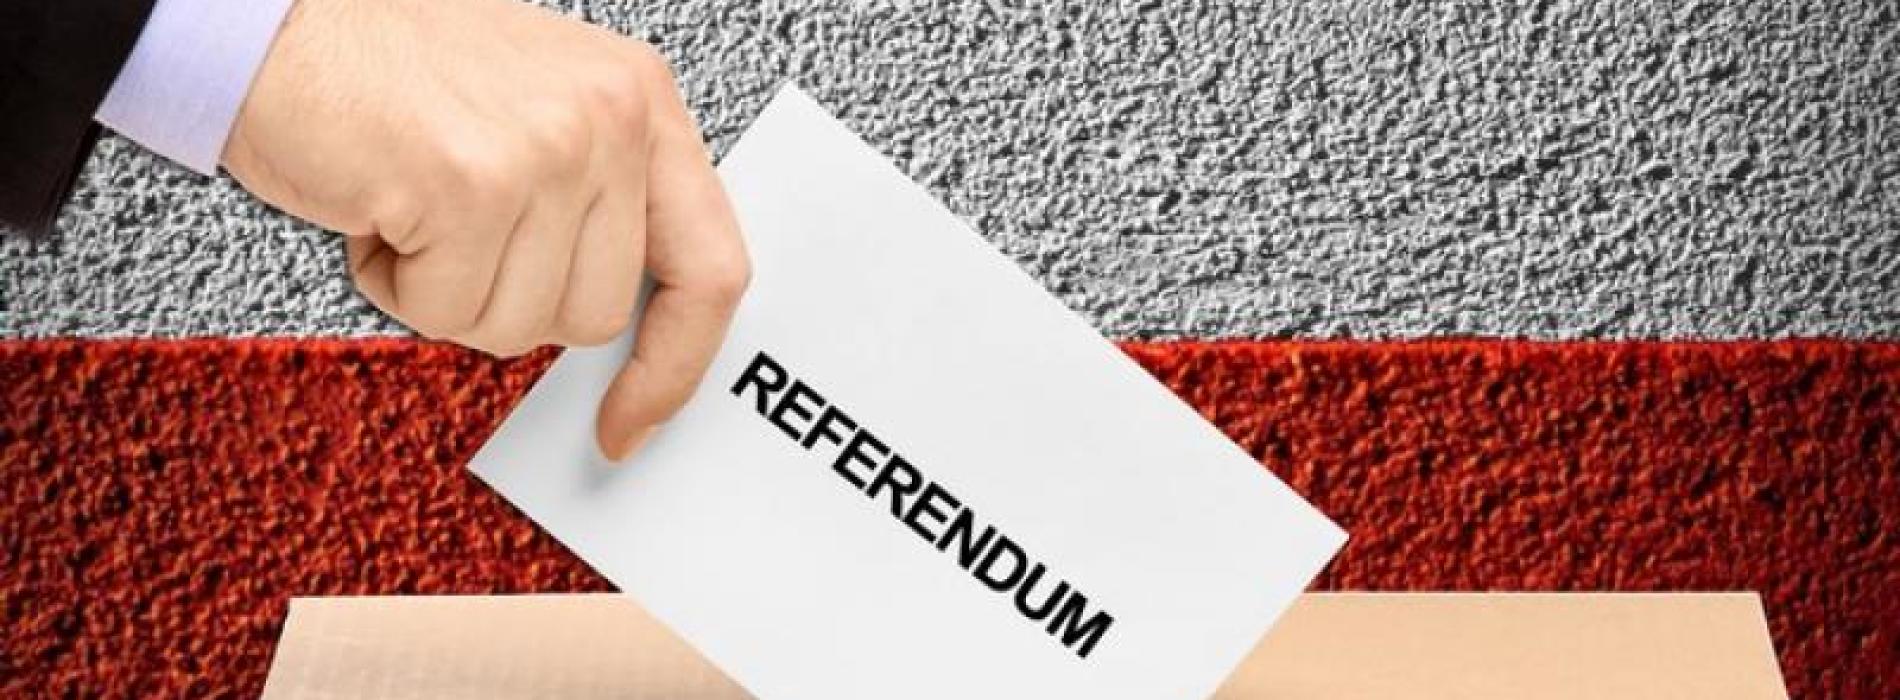 Referendum Notriv, un Si per ragionare sul  futuro, senza la demagogia del presente